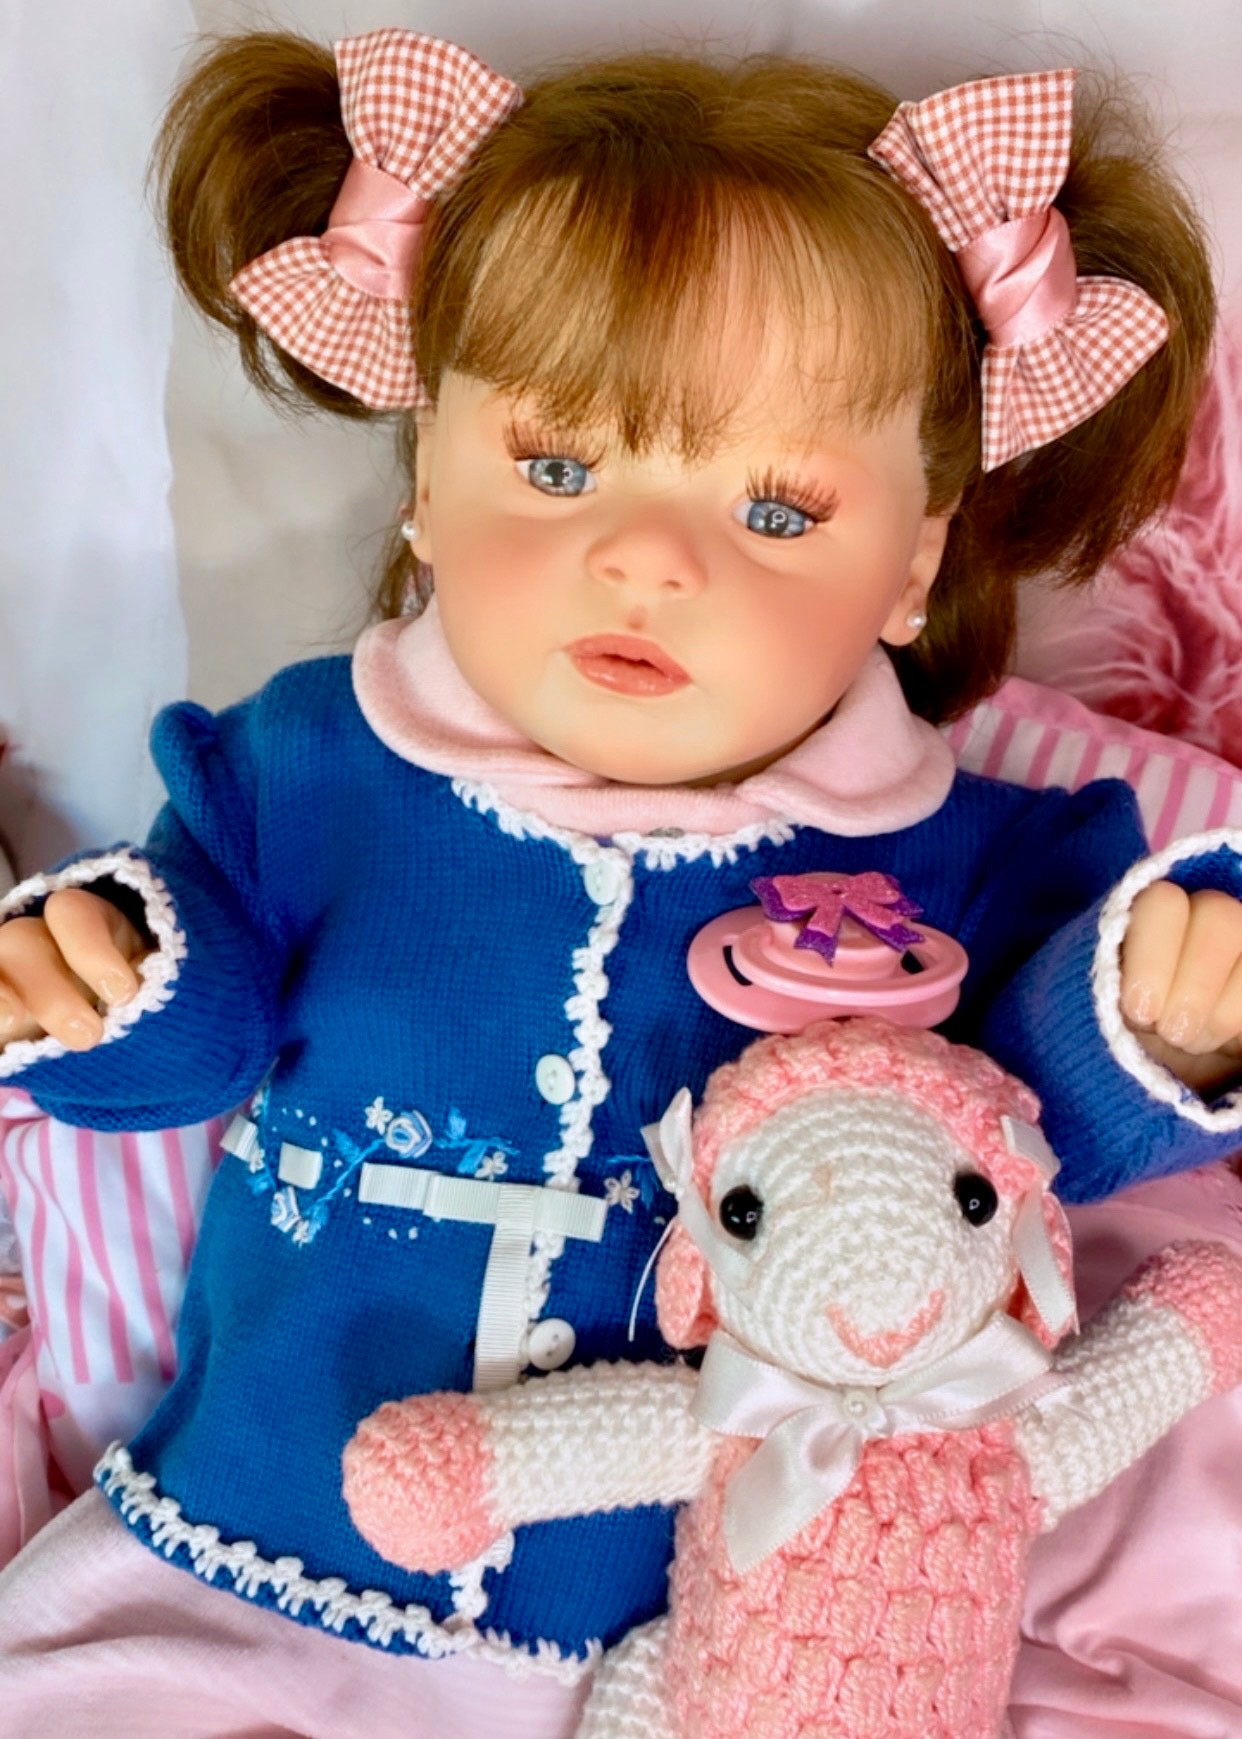 Boneca Bebê Reborn de Silicone - Bebê Reborn Menina Realista